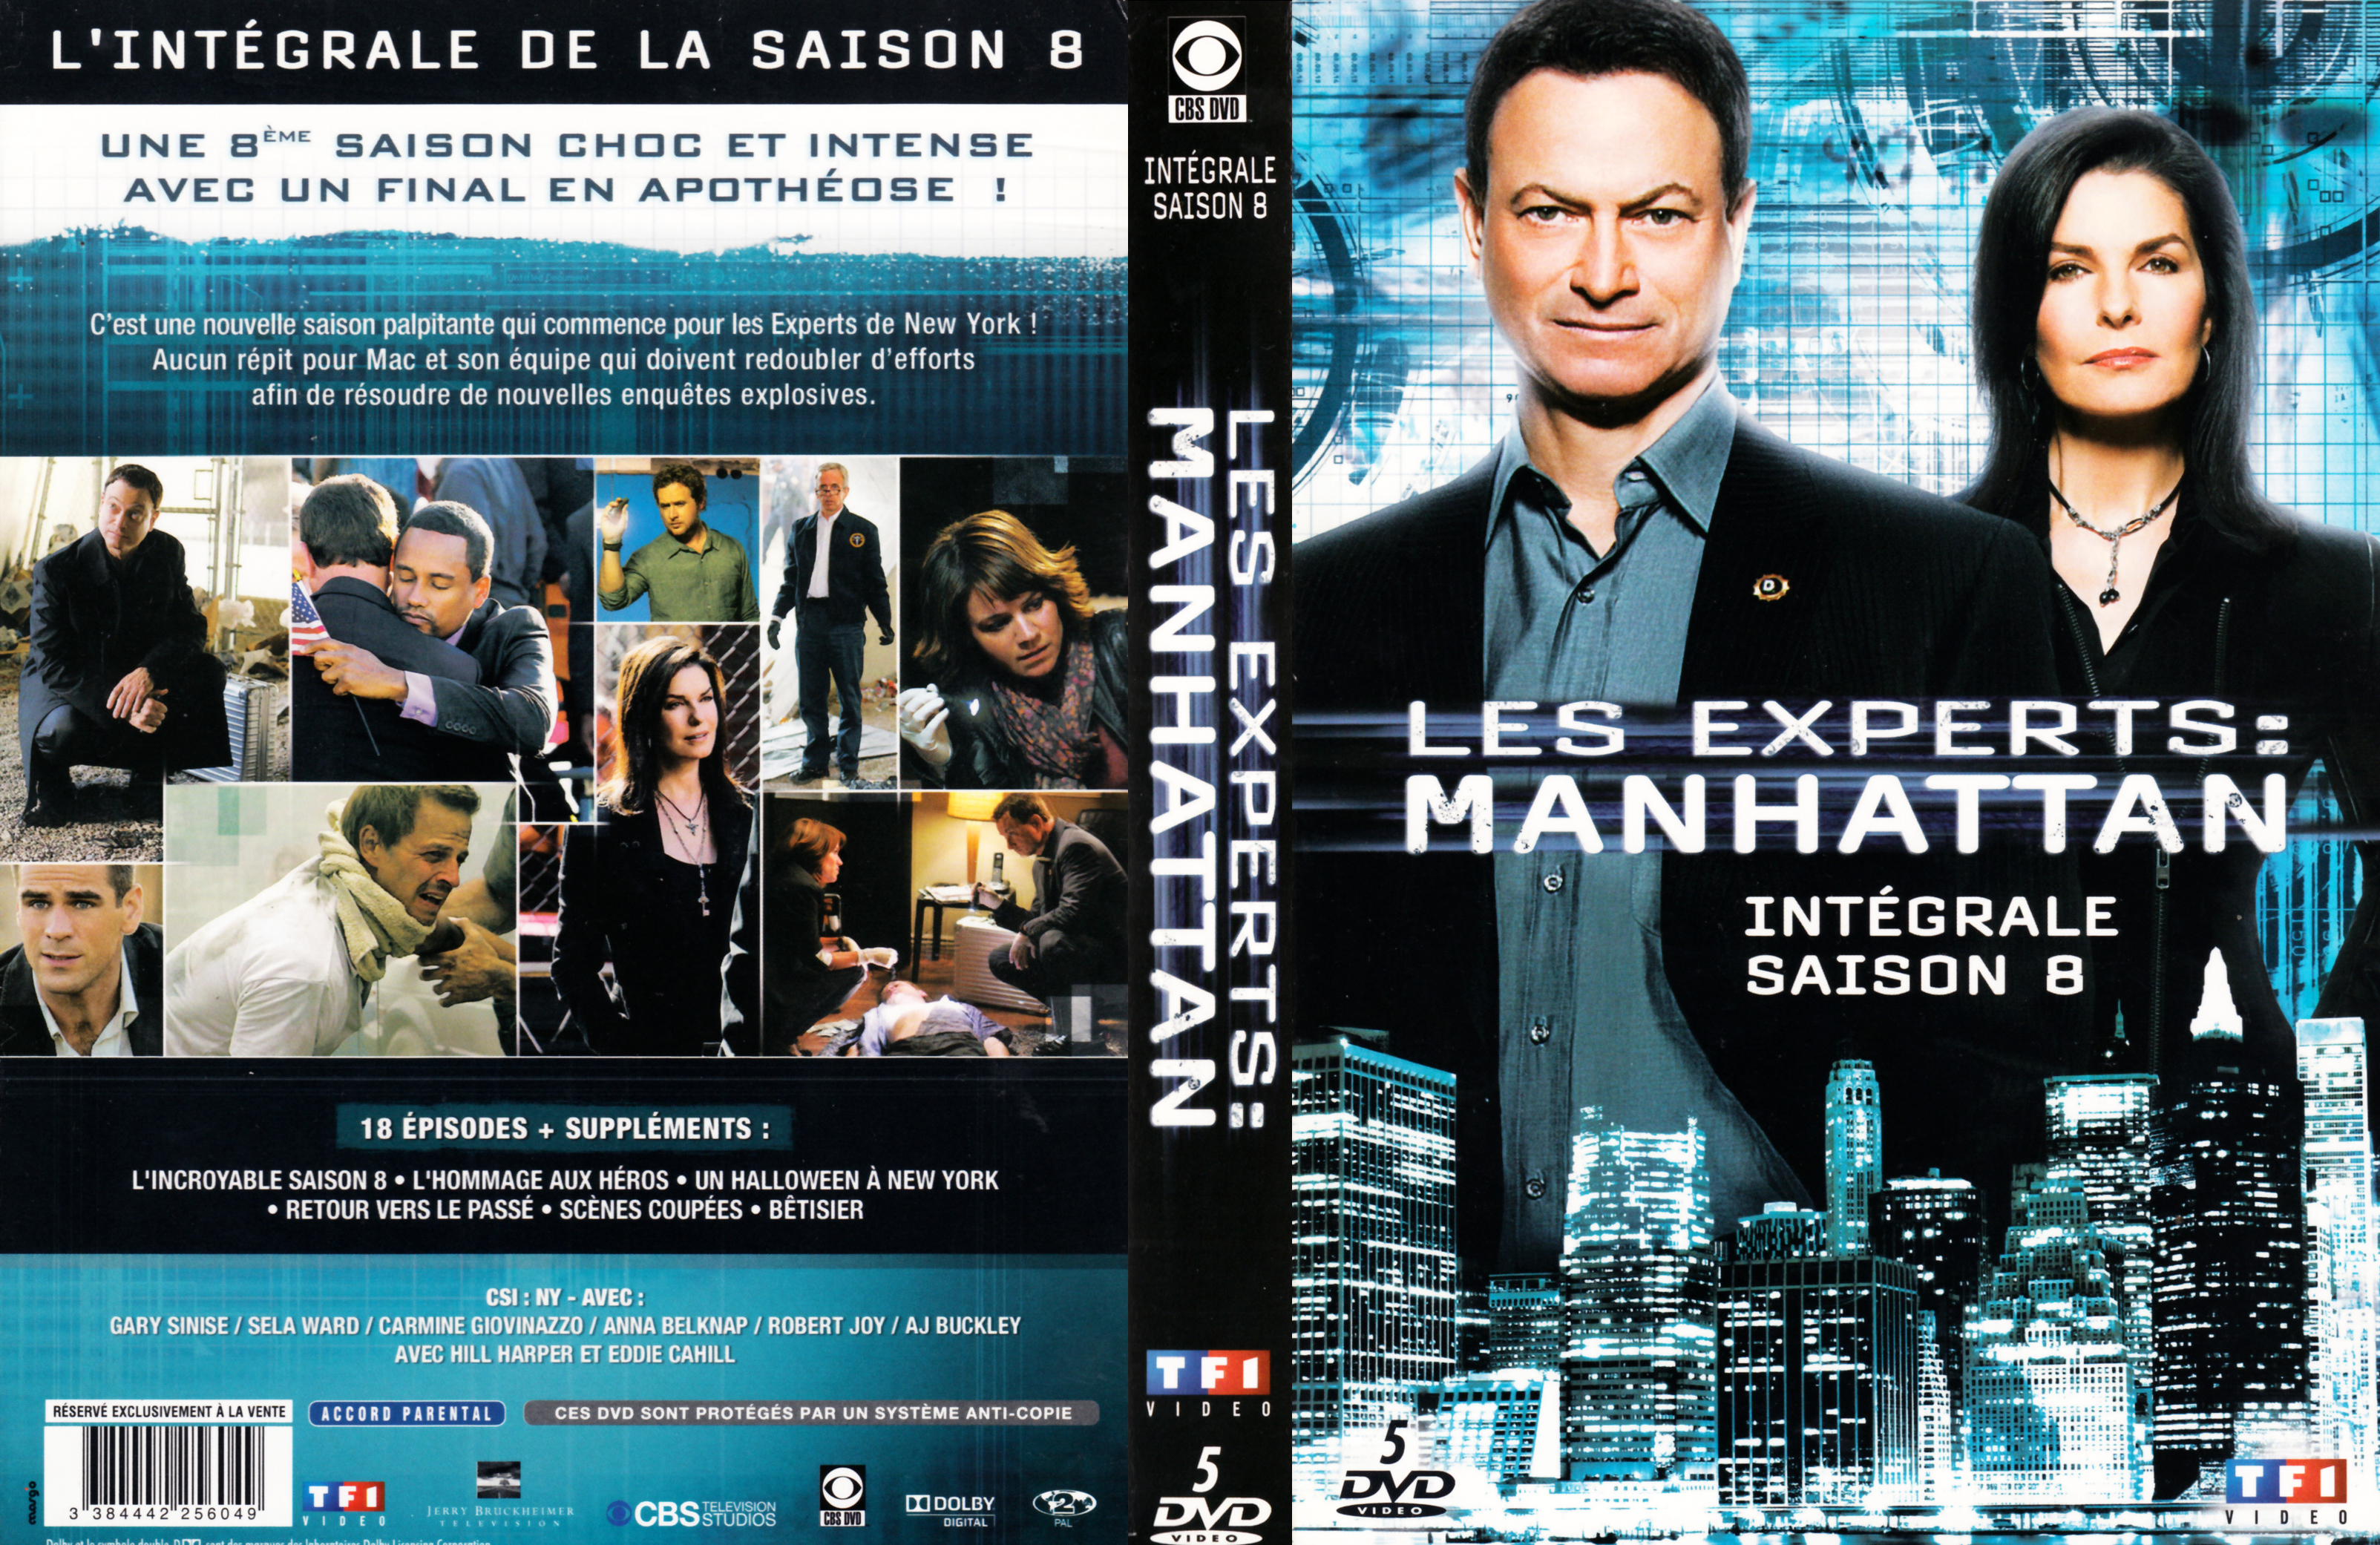 Jaquette DVD Les Experts Manhattan Saison 8 COFFRET